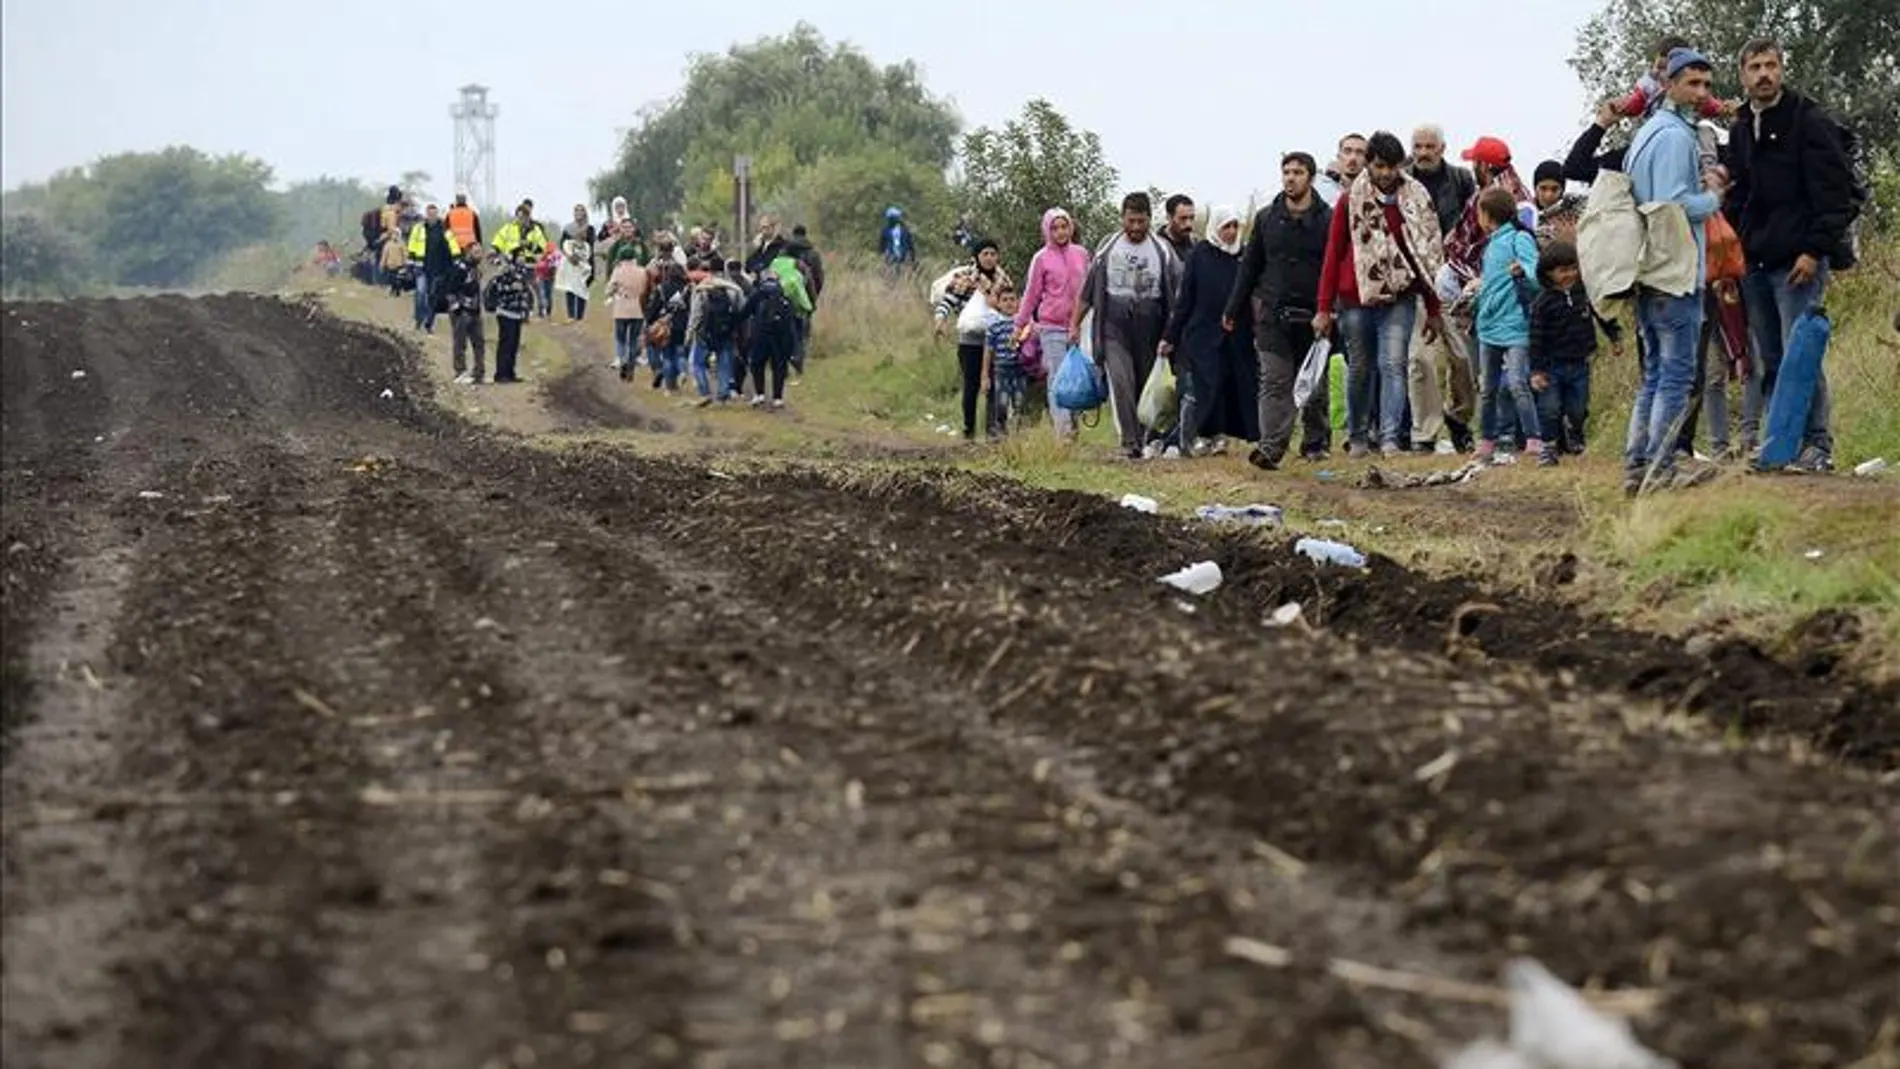 Refugiados a su llegada a un centro para refugiados en Roszke (Hungría)